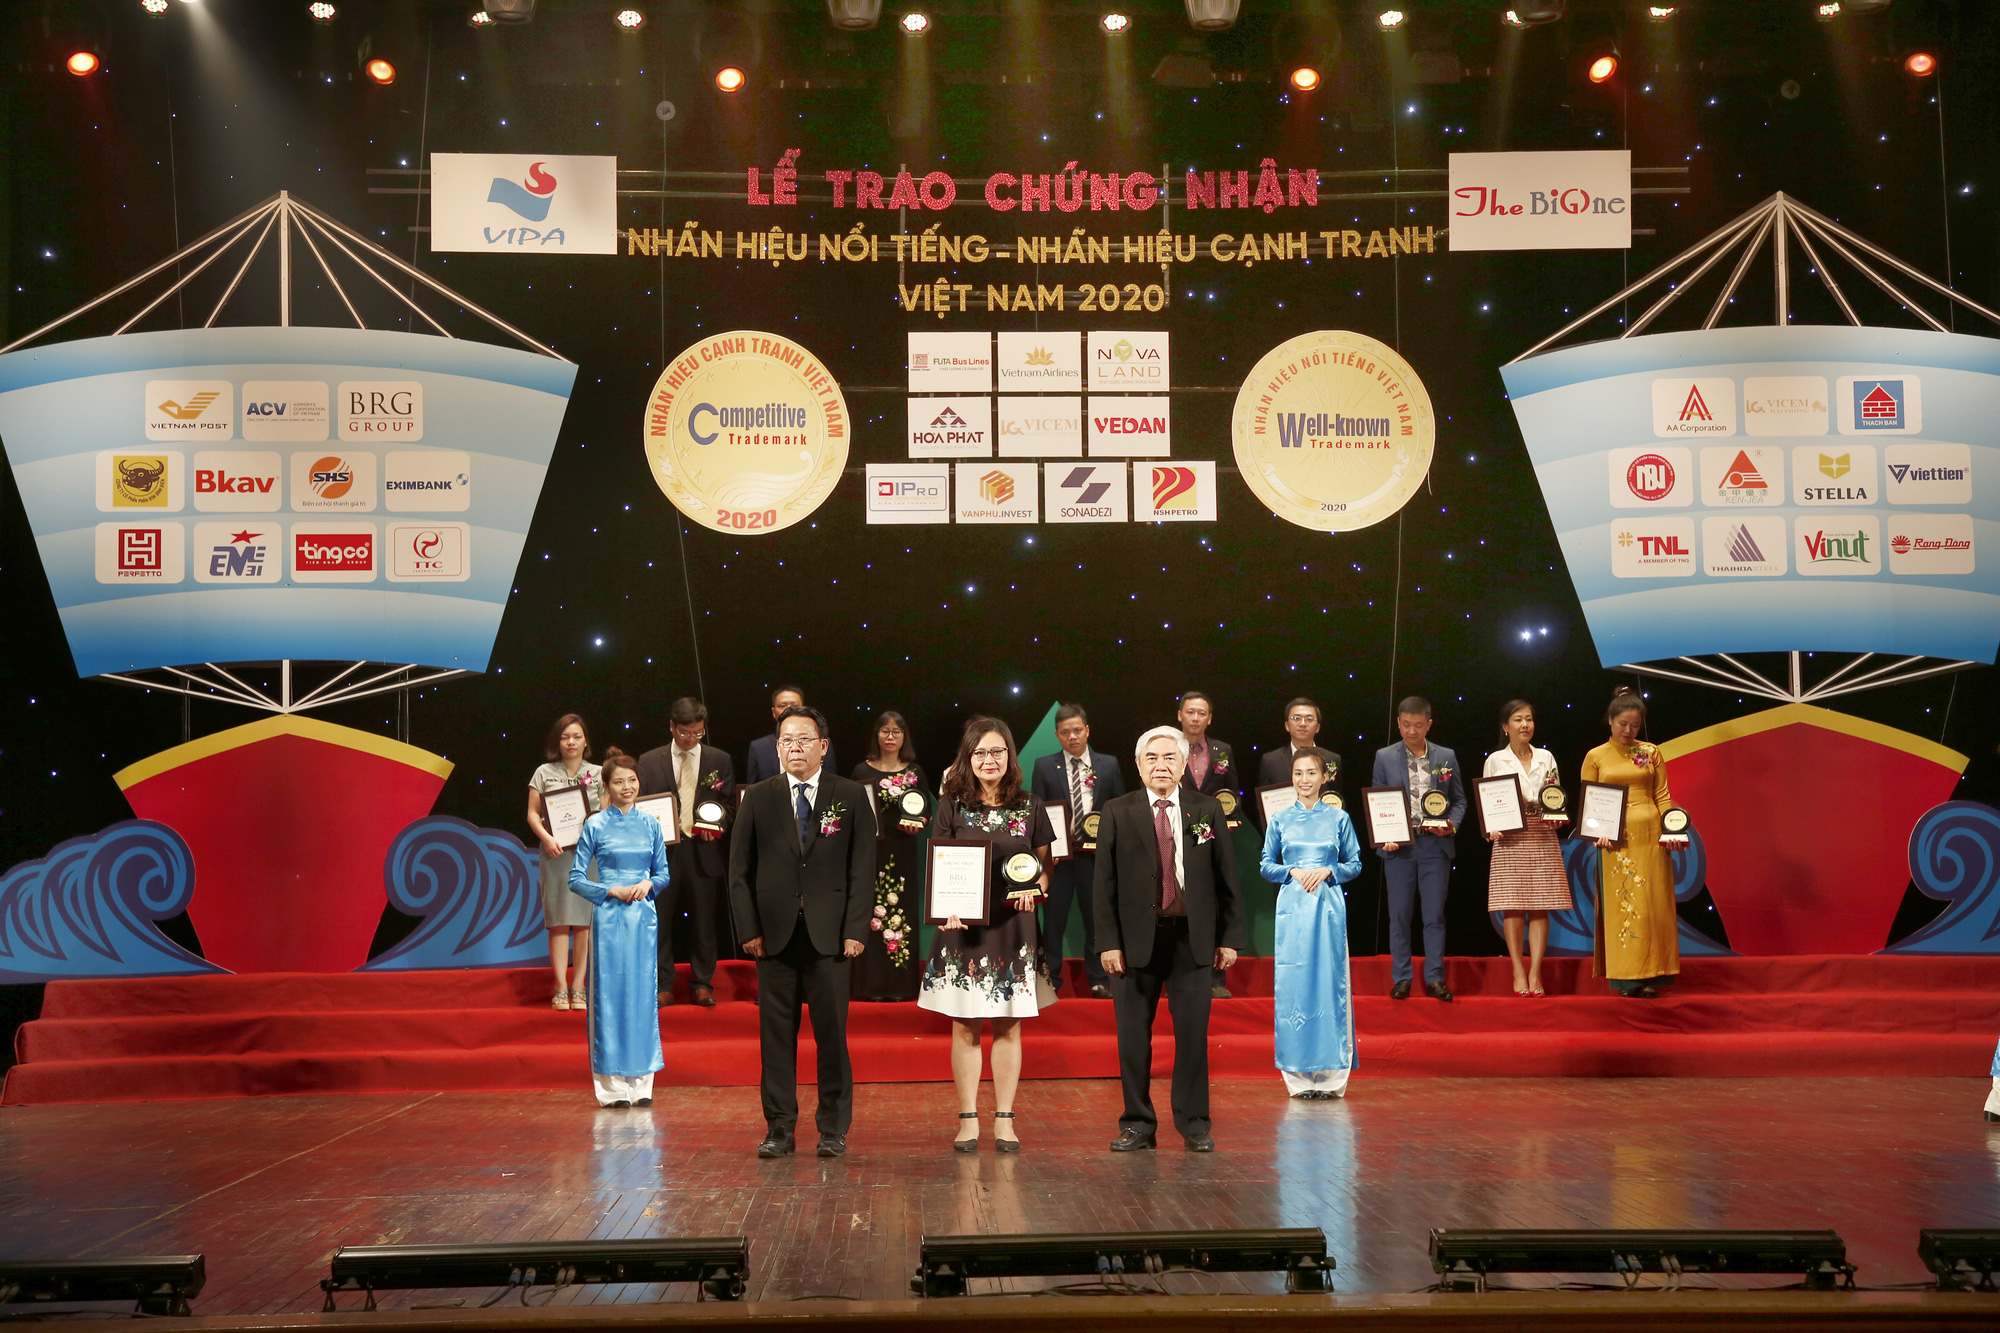 Tập đoàn BRG tiếp tục khẳng định vị thế Top 10 Nhãn hiệu nổi tiếng nhất Việt Nam - Ảnh 1.